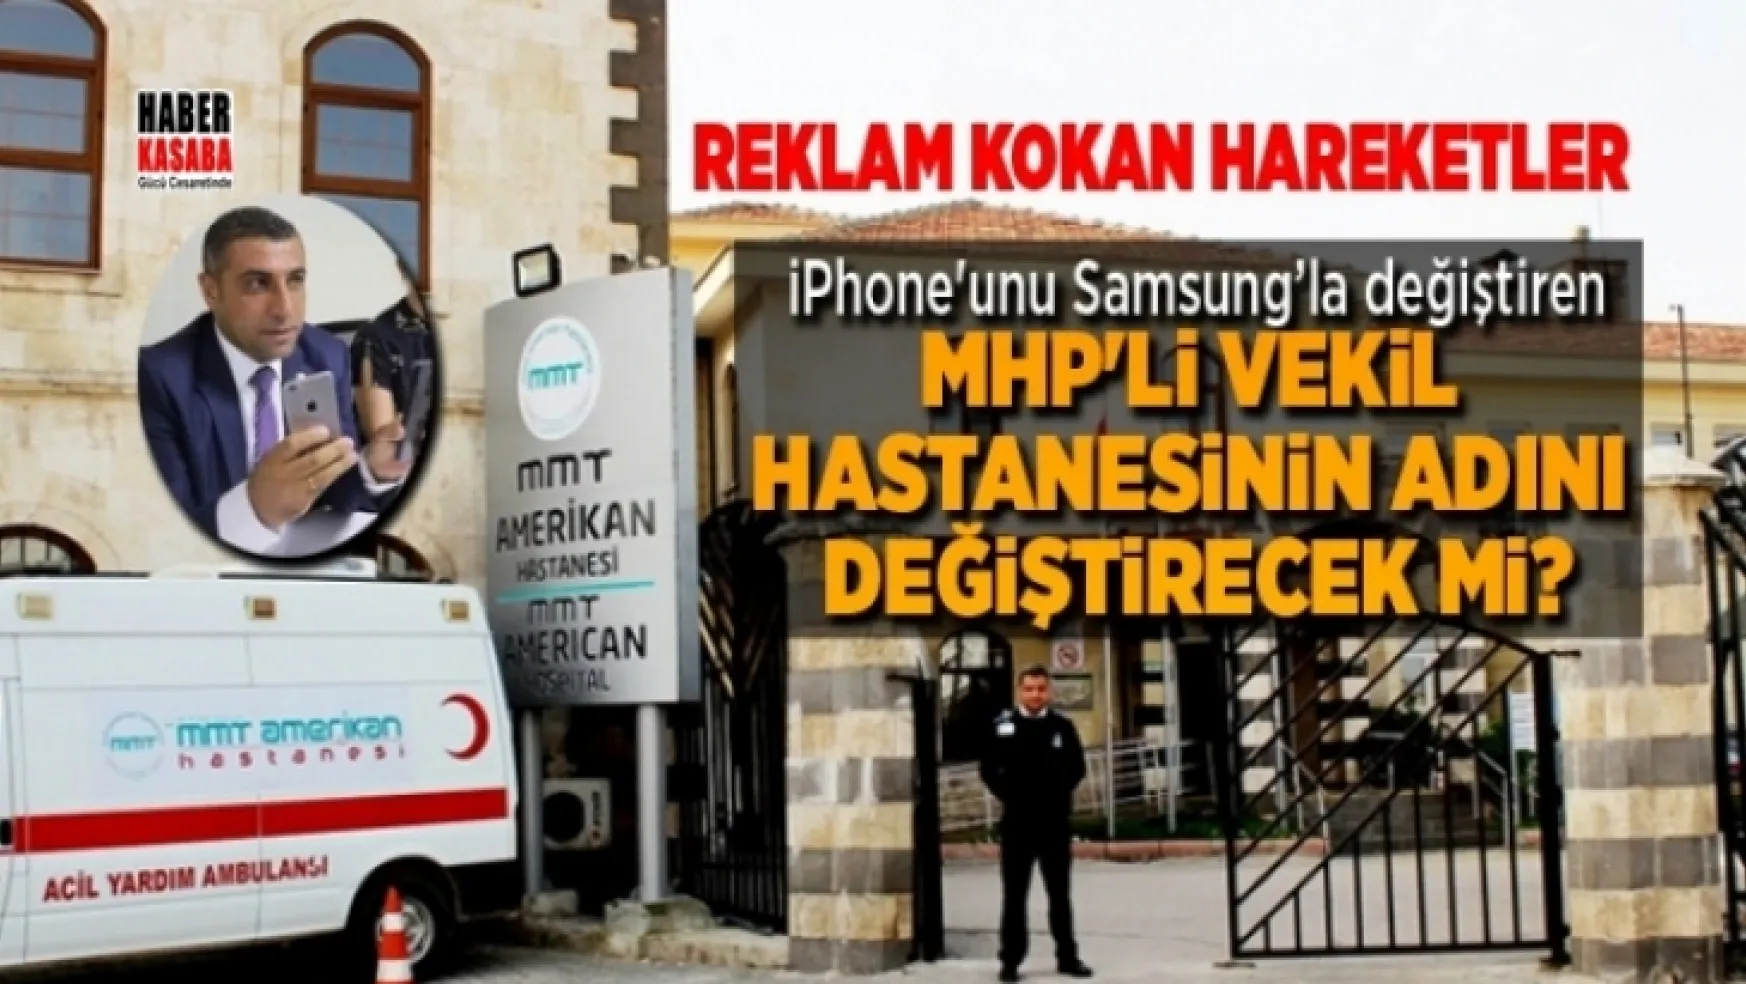 iPhone'unu Samsung'la değiştiren MHP'li vekil hastanesinin adını değiştirebilecek mi?